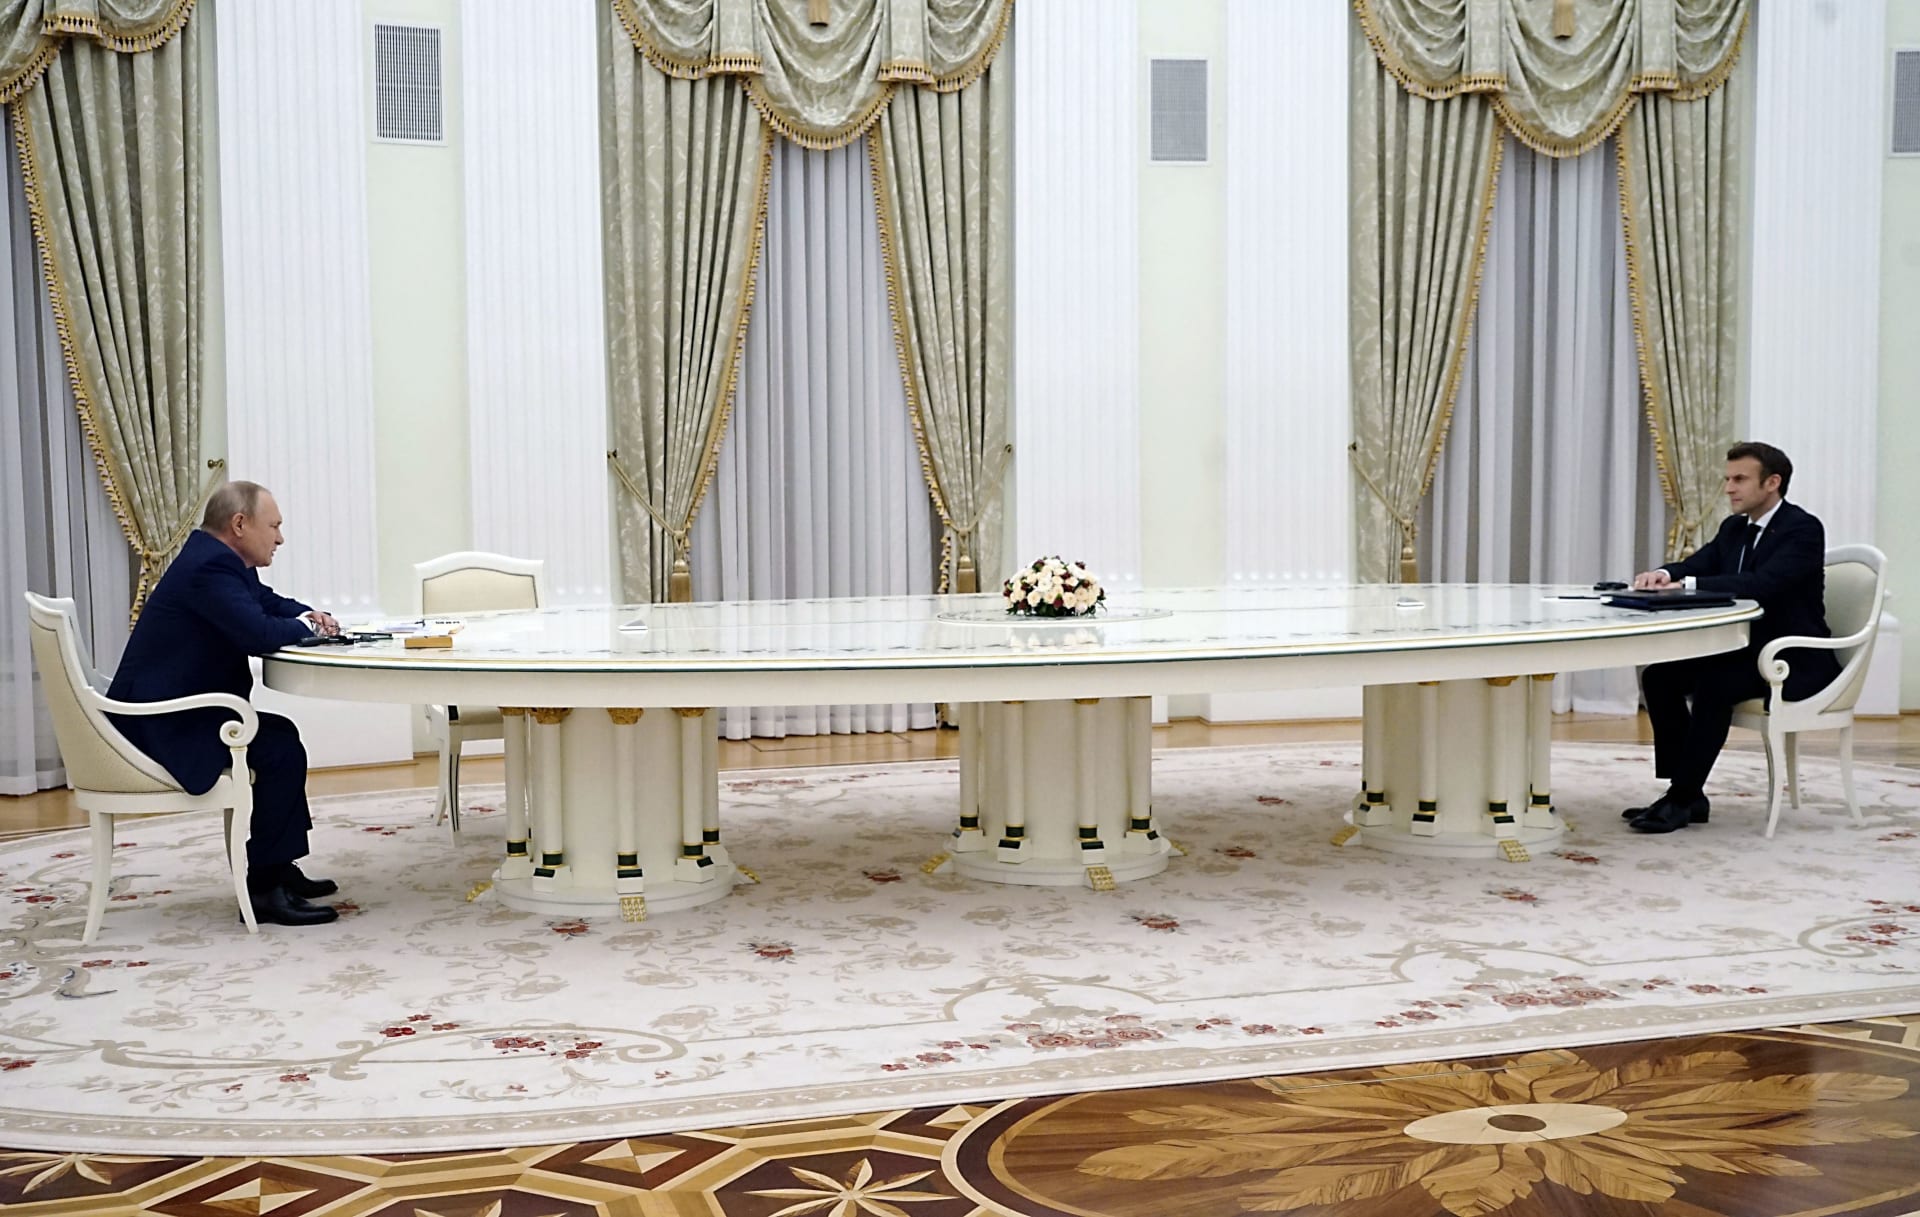 الرئيس الروسي فلاديمير بوتين ونظيره الفرنسي إيمانويل ماكرون في مواجهة بعضهما على طاولة طويلة في الكرملين